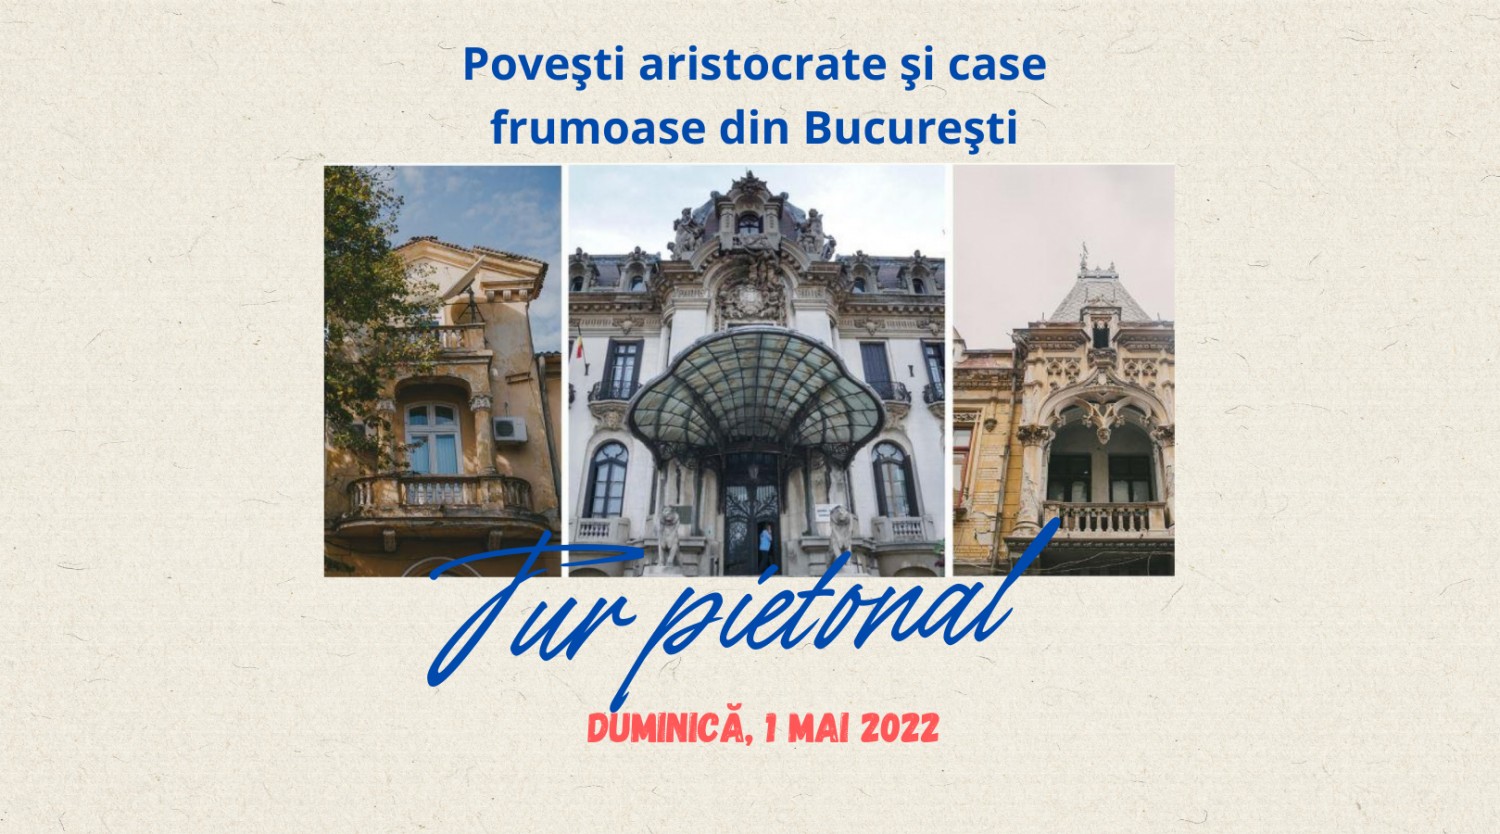 Poveşti aristocrate şi case frumoase din Bucureşti - tur pietonal